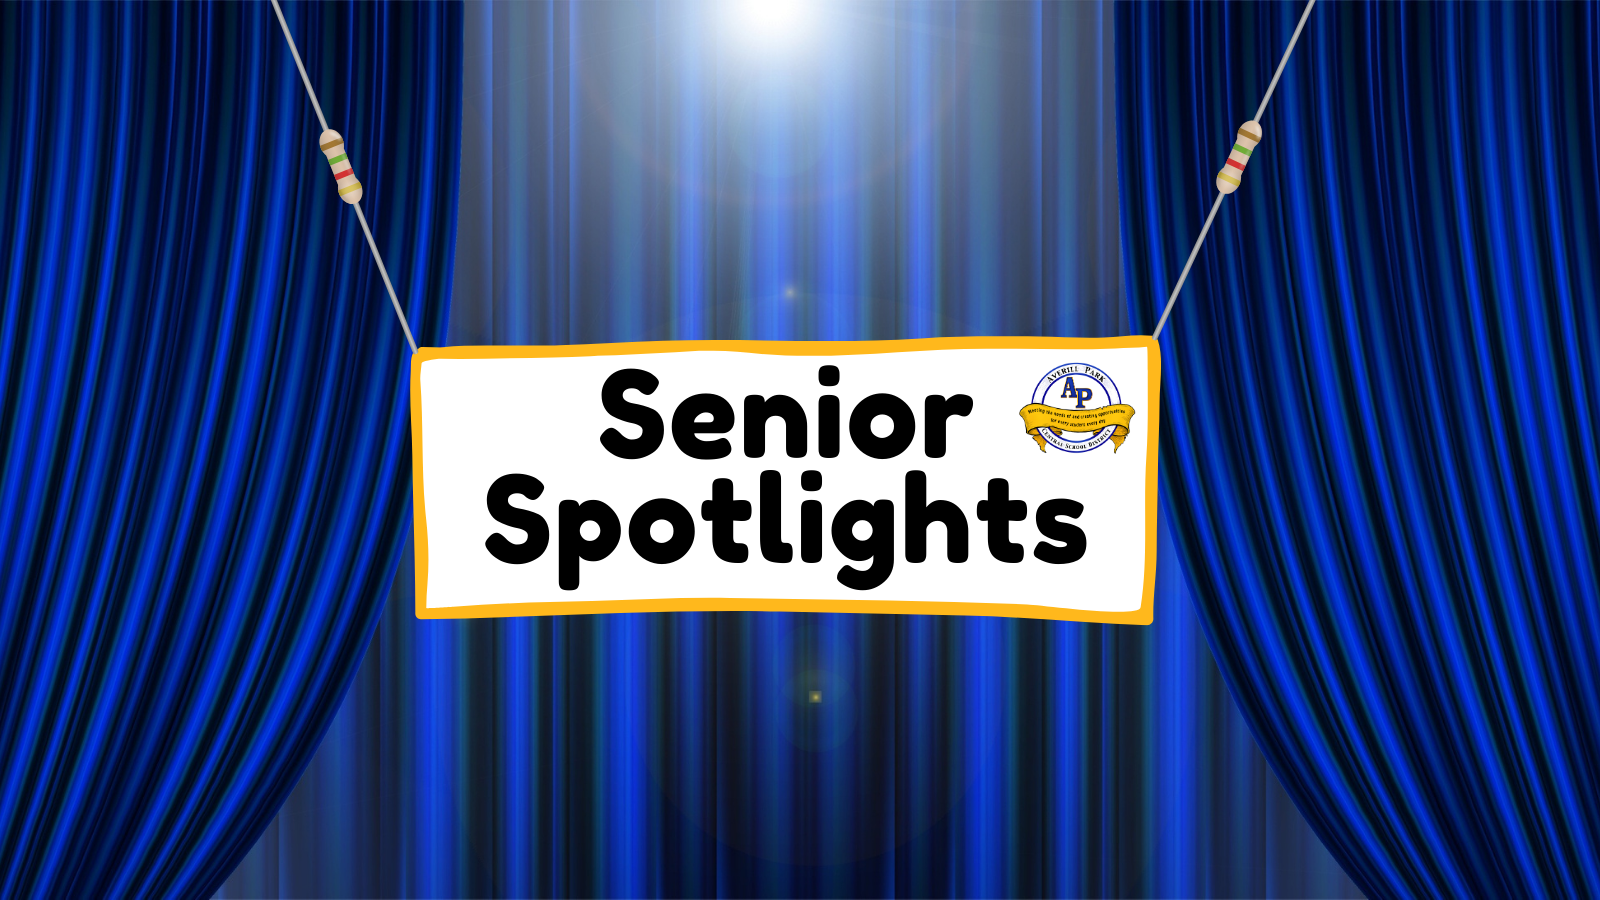 Senior Spotlights